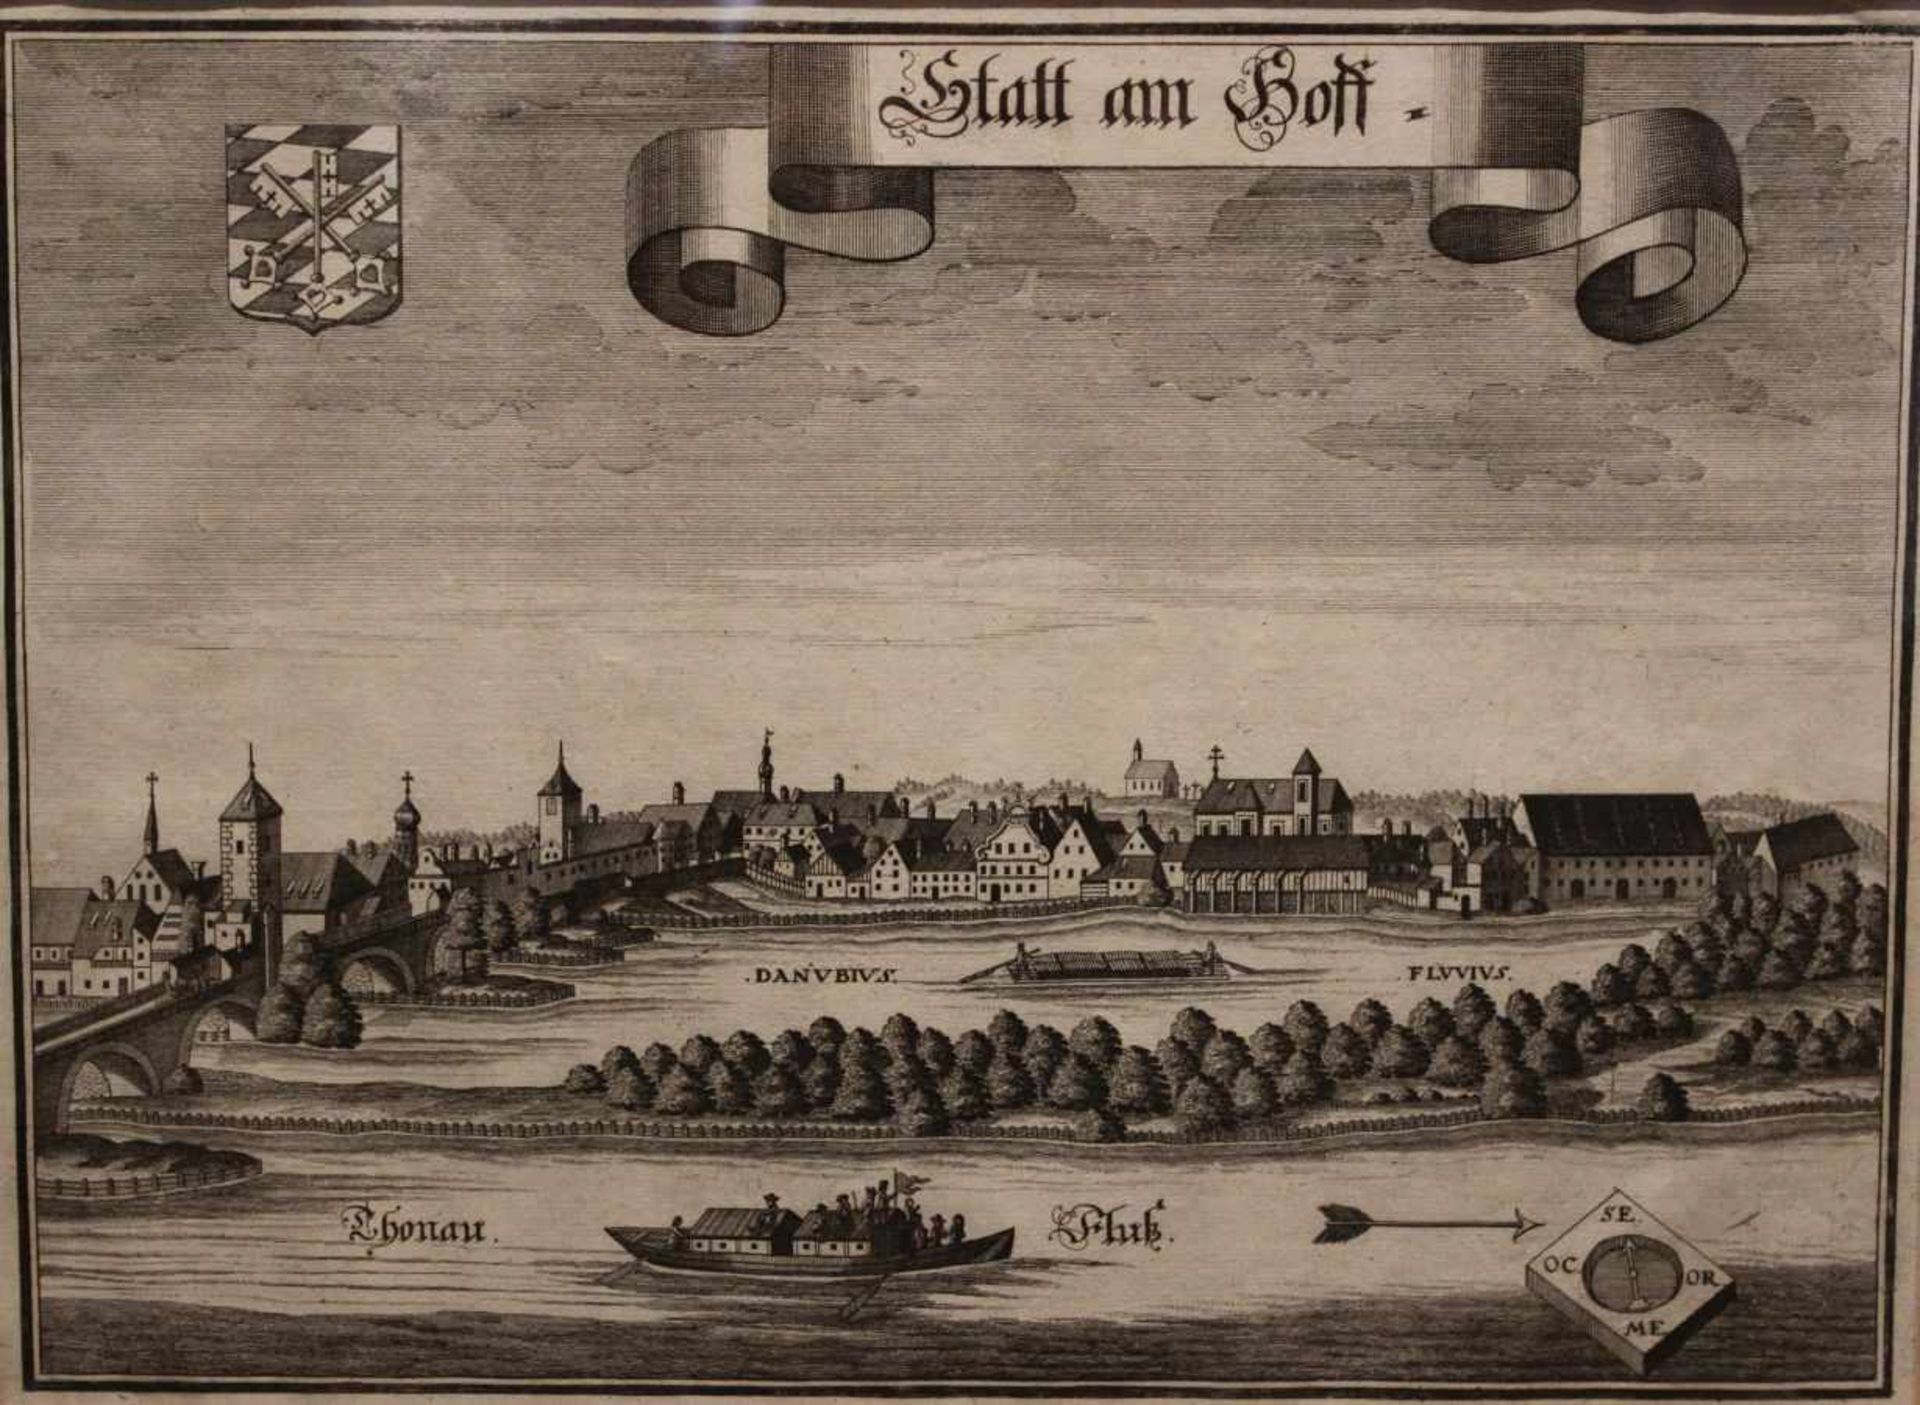 Kupferstich - Michael Wening (1645 Nürnberg - 1718 München) "Stadtamhof - Ansicht vom Süden mit